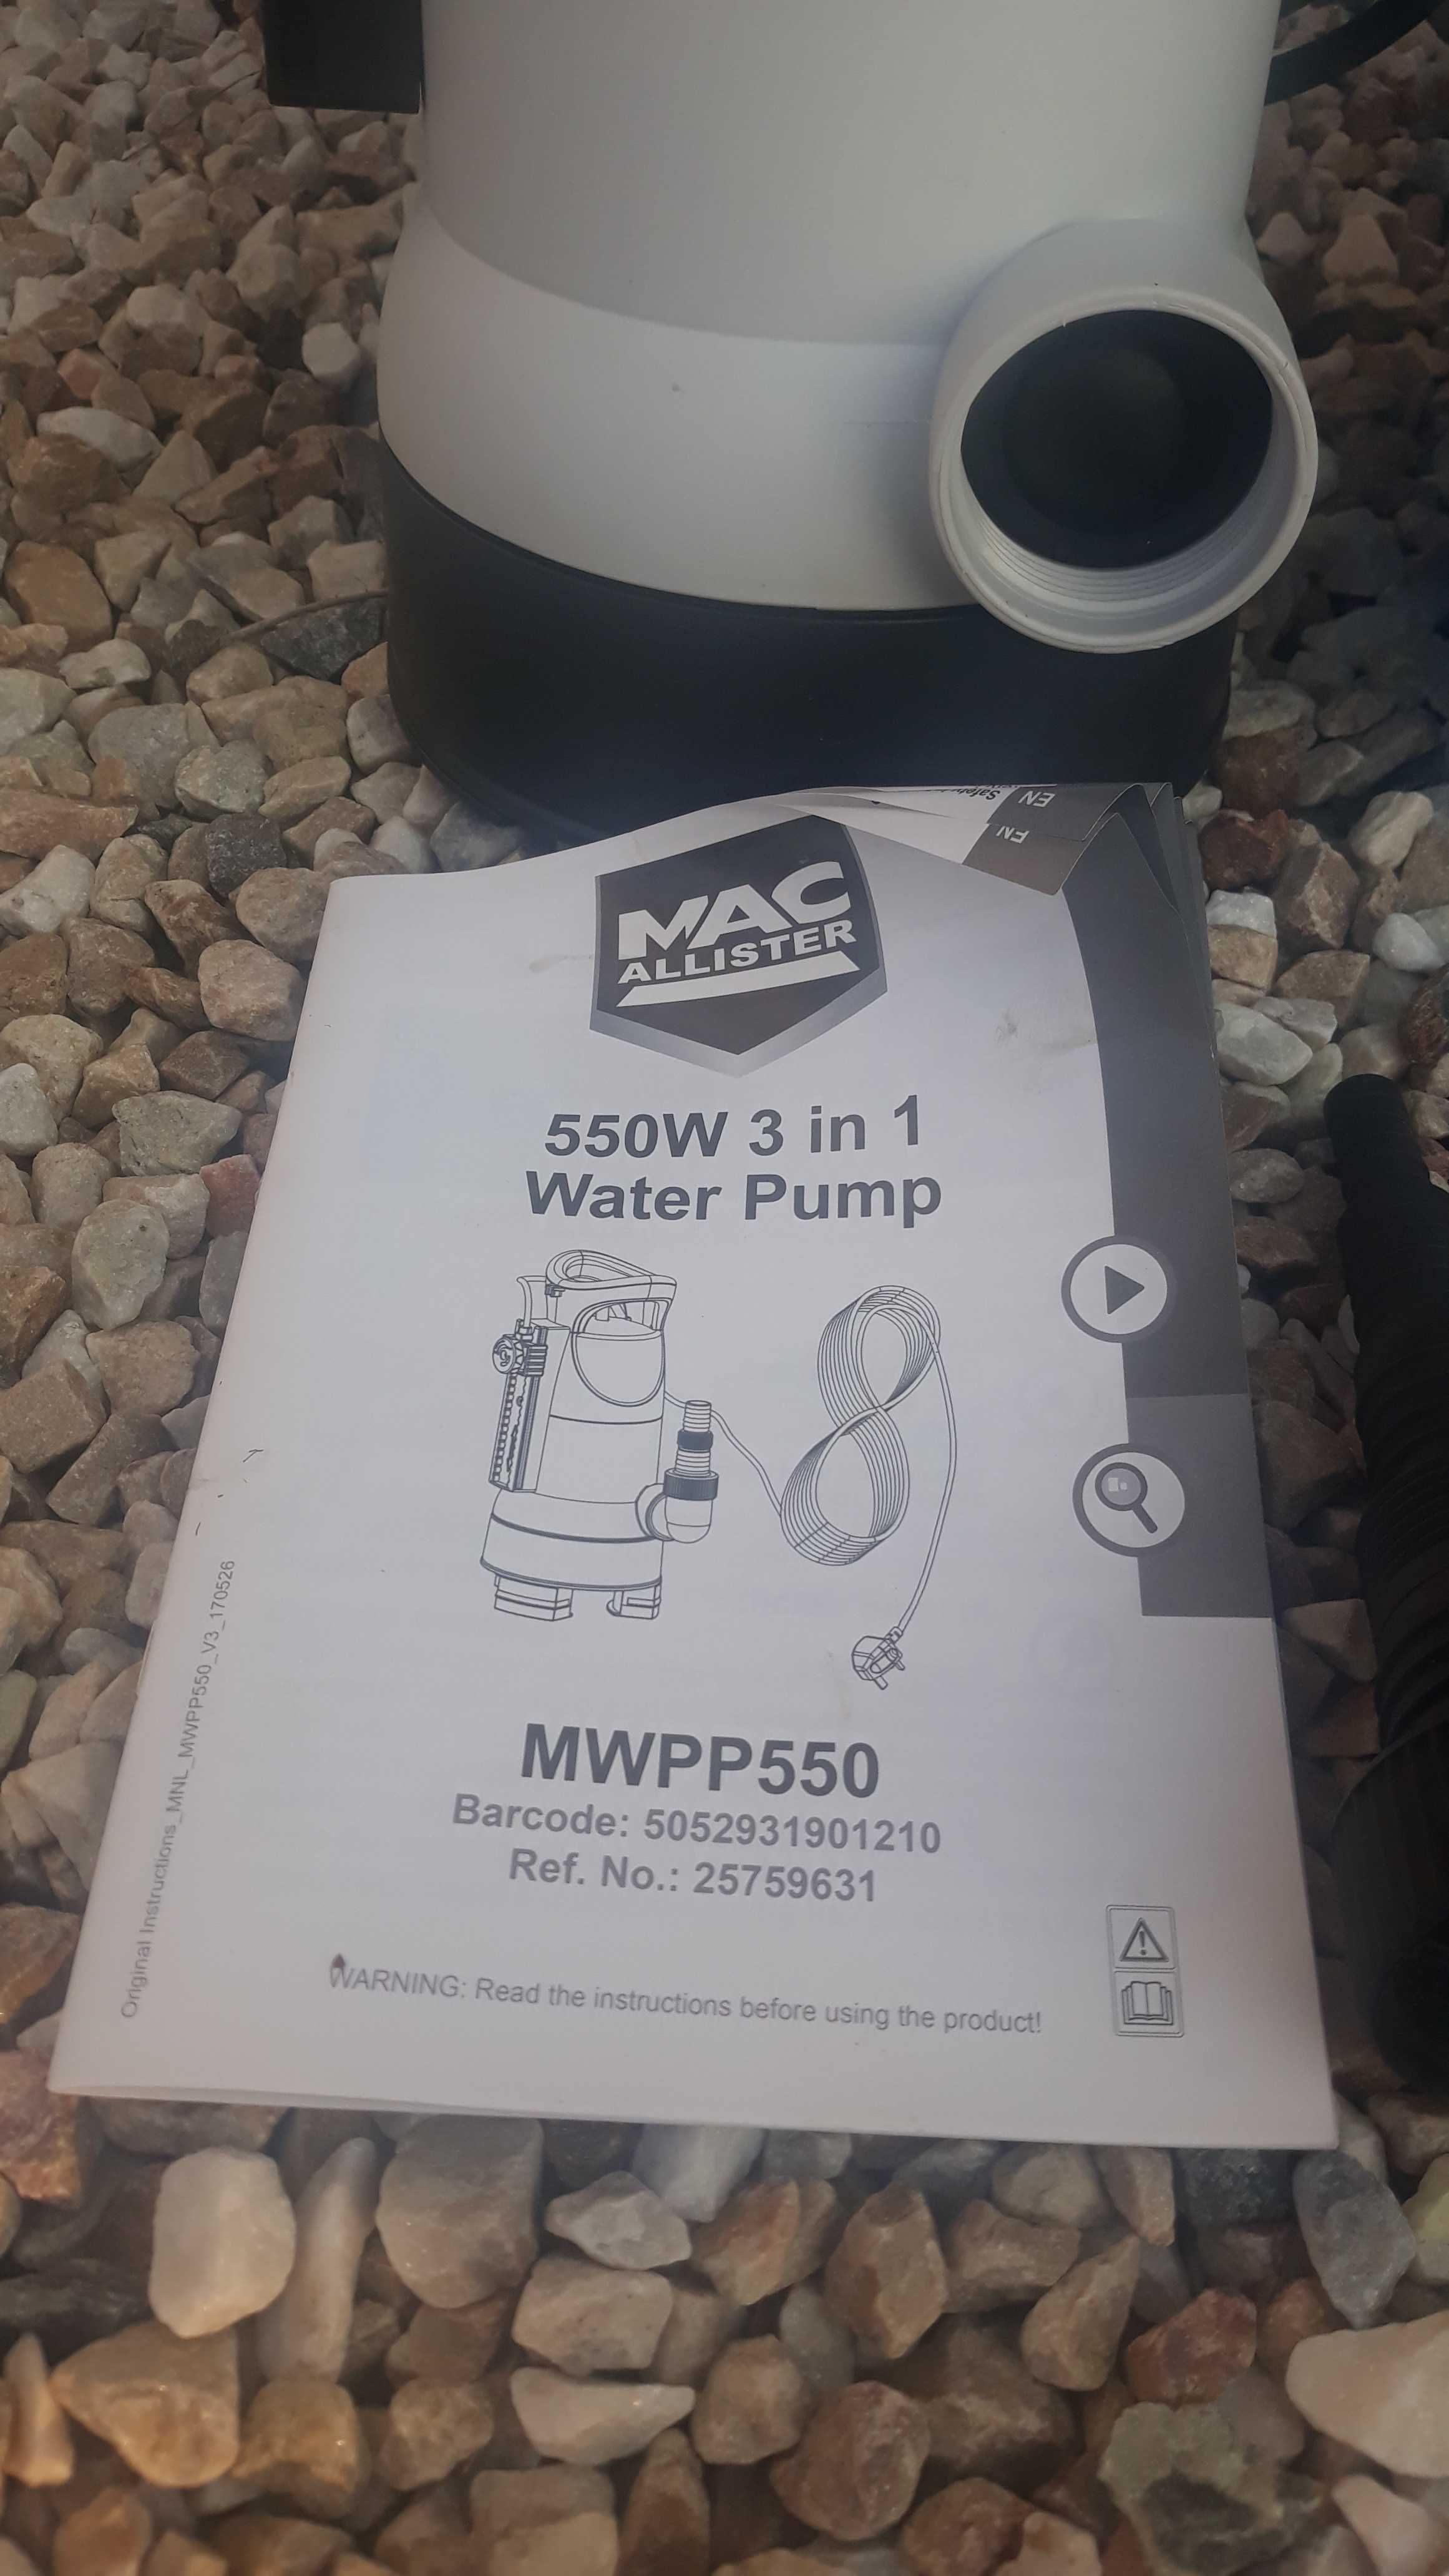 Pompa zanurzeniowa do brudnej wody Macallister mwpp550 3w1